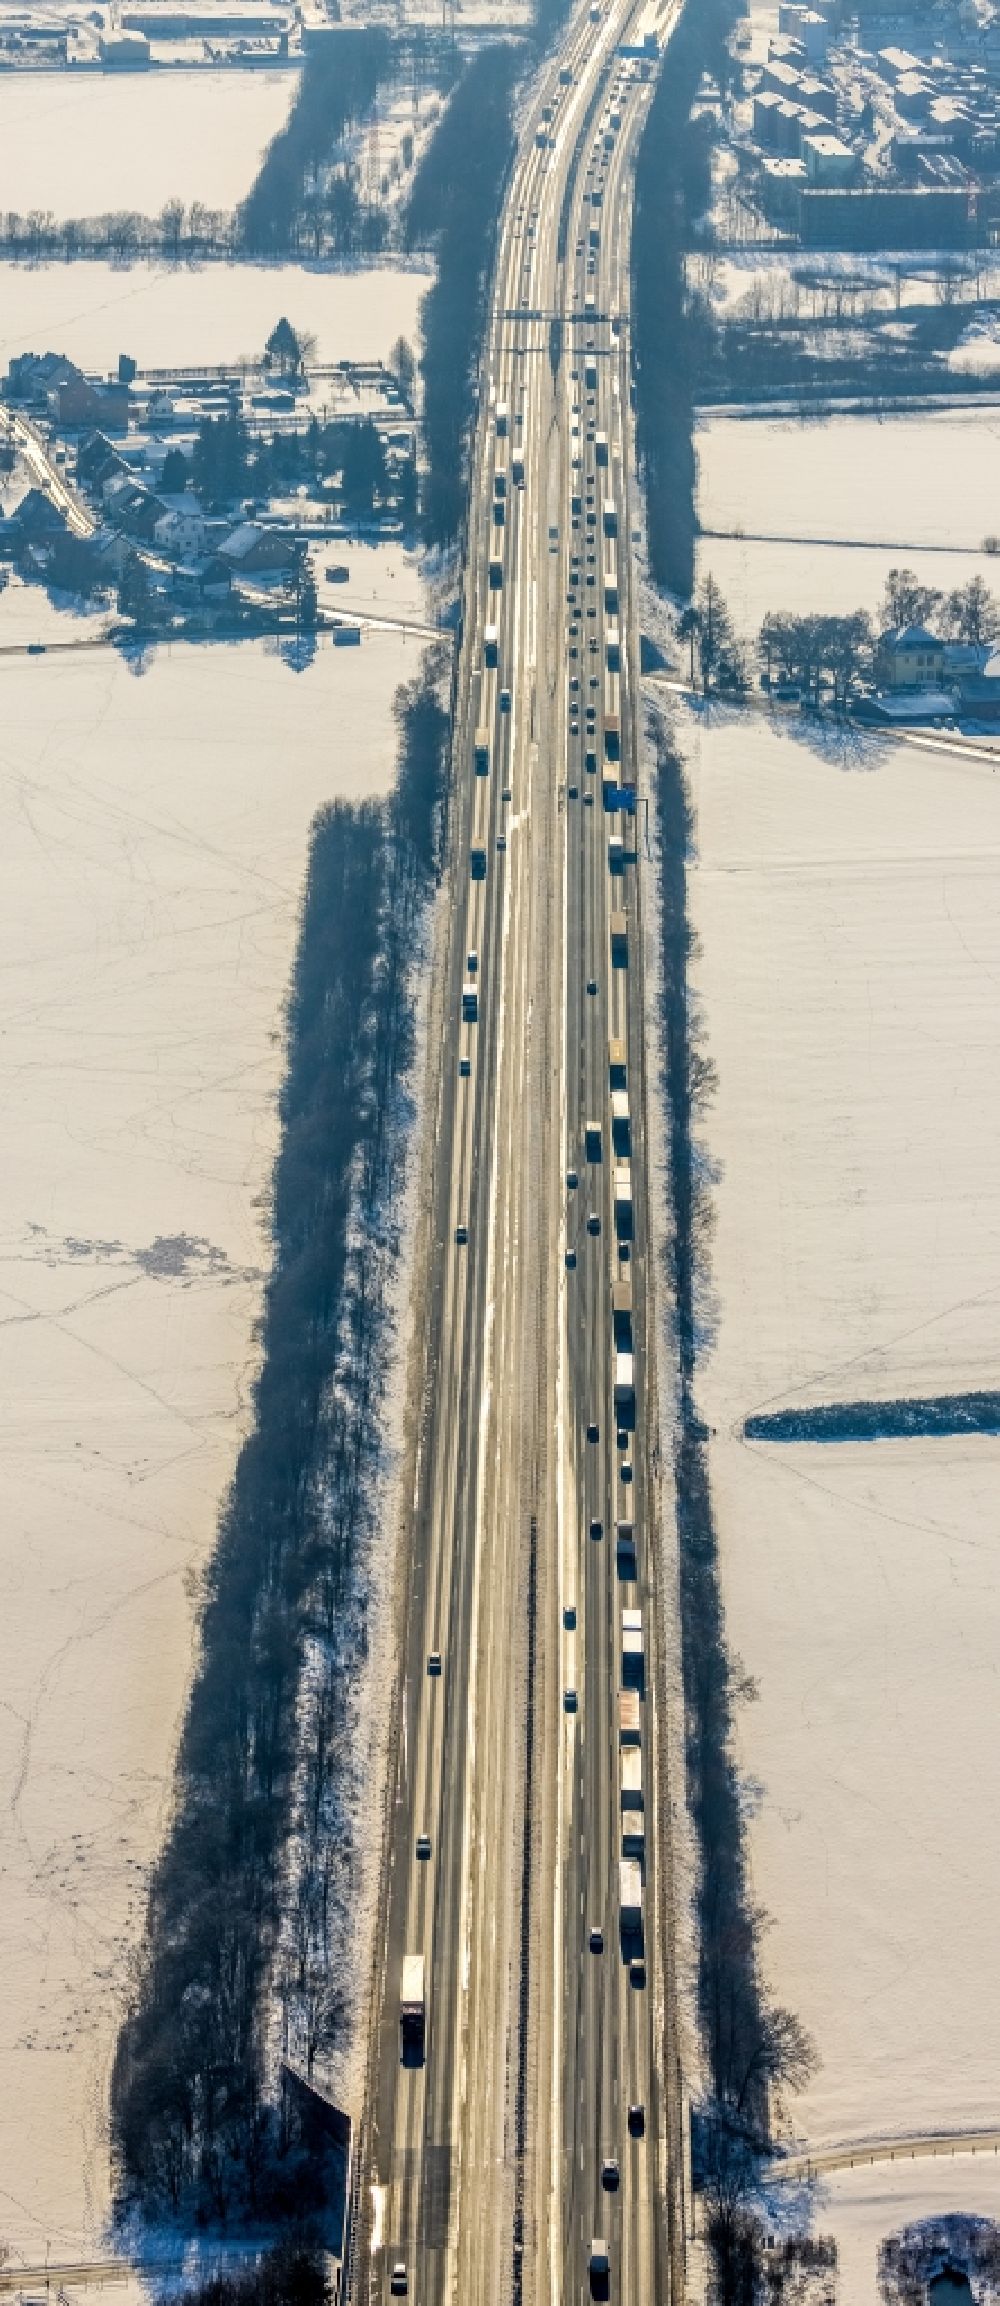 Unna von oben - Winterluftbild Autobahn- Streckenverlauf der A1 in Unna im Bundesland Nordrhein-Westfalen, Deutschland